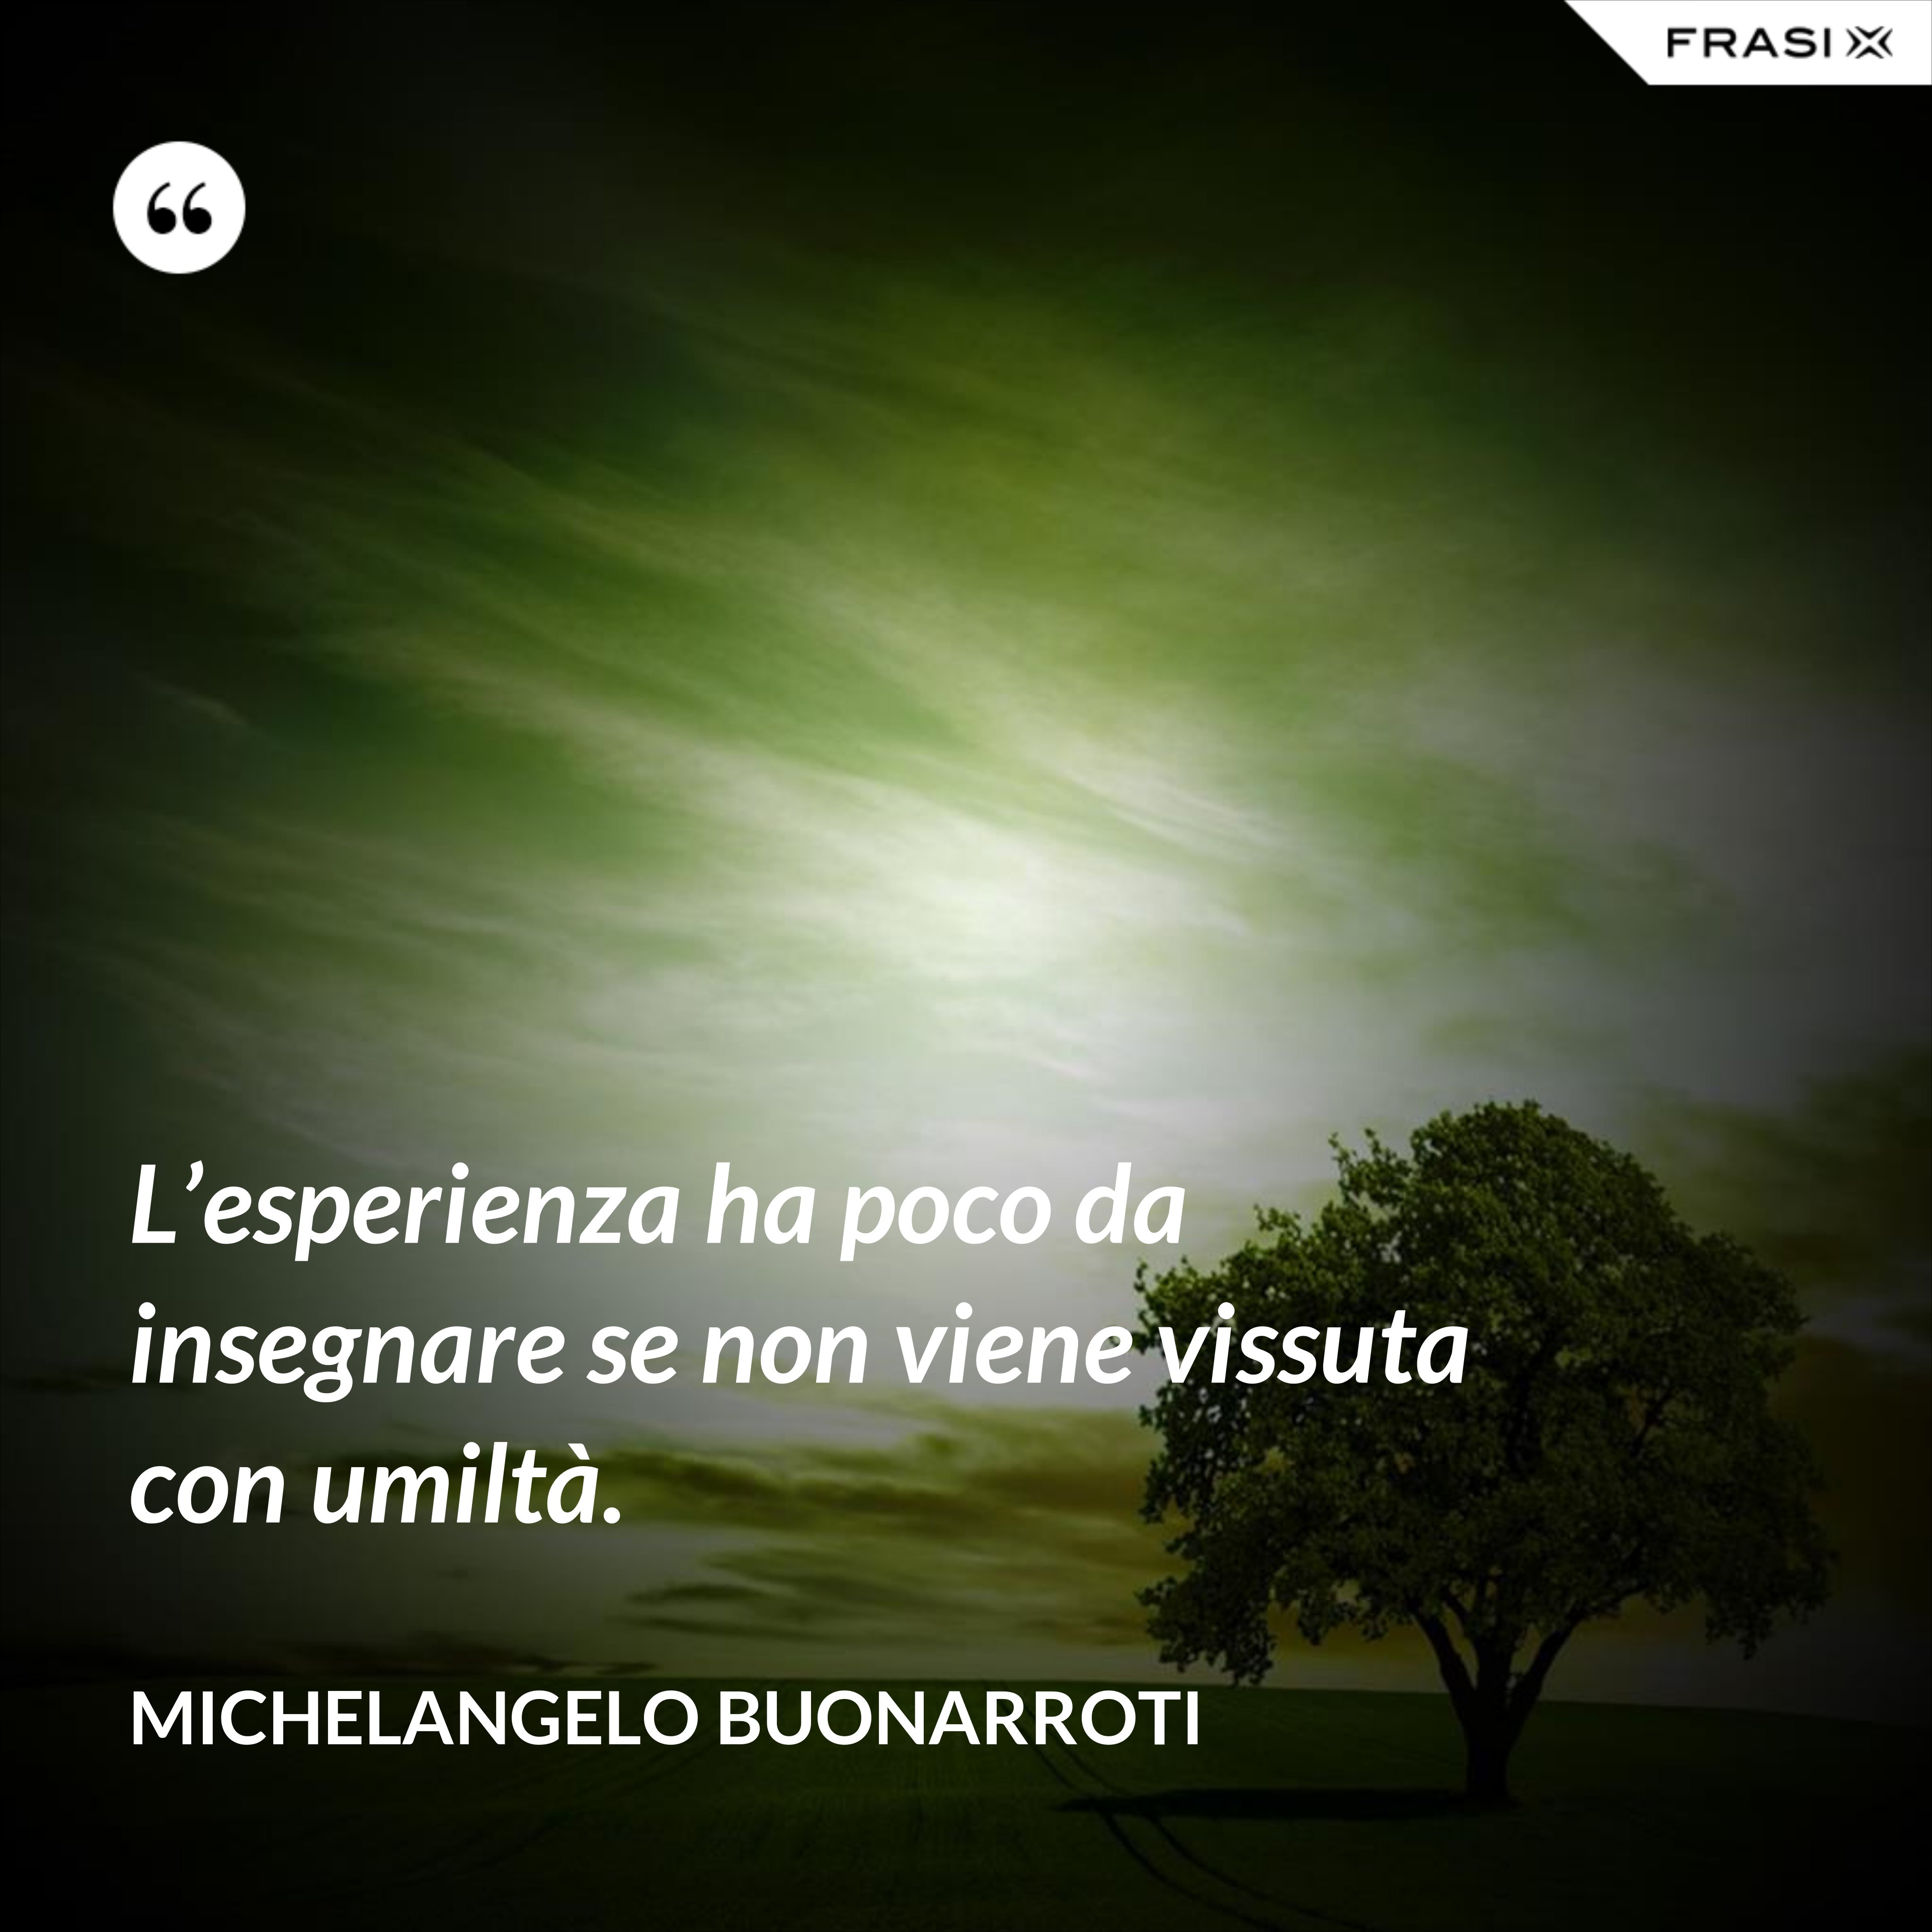 L’esperienza ha poco da insegnare se non viene vissuta con umiltà. - Michelangelo Buonarroti